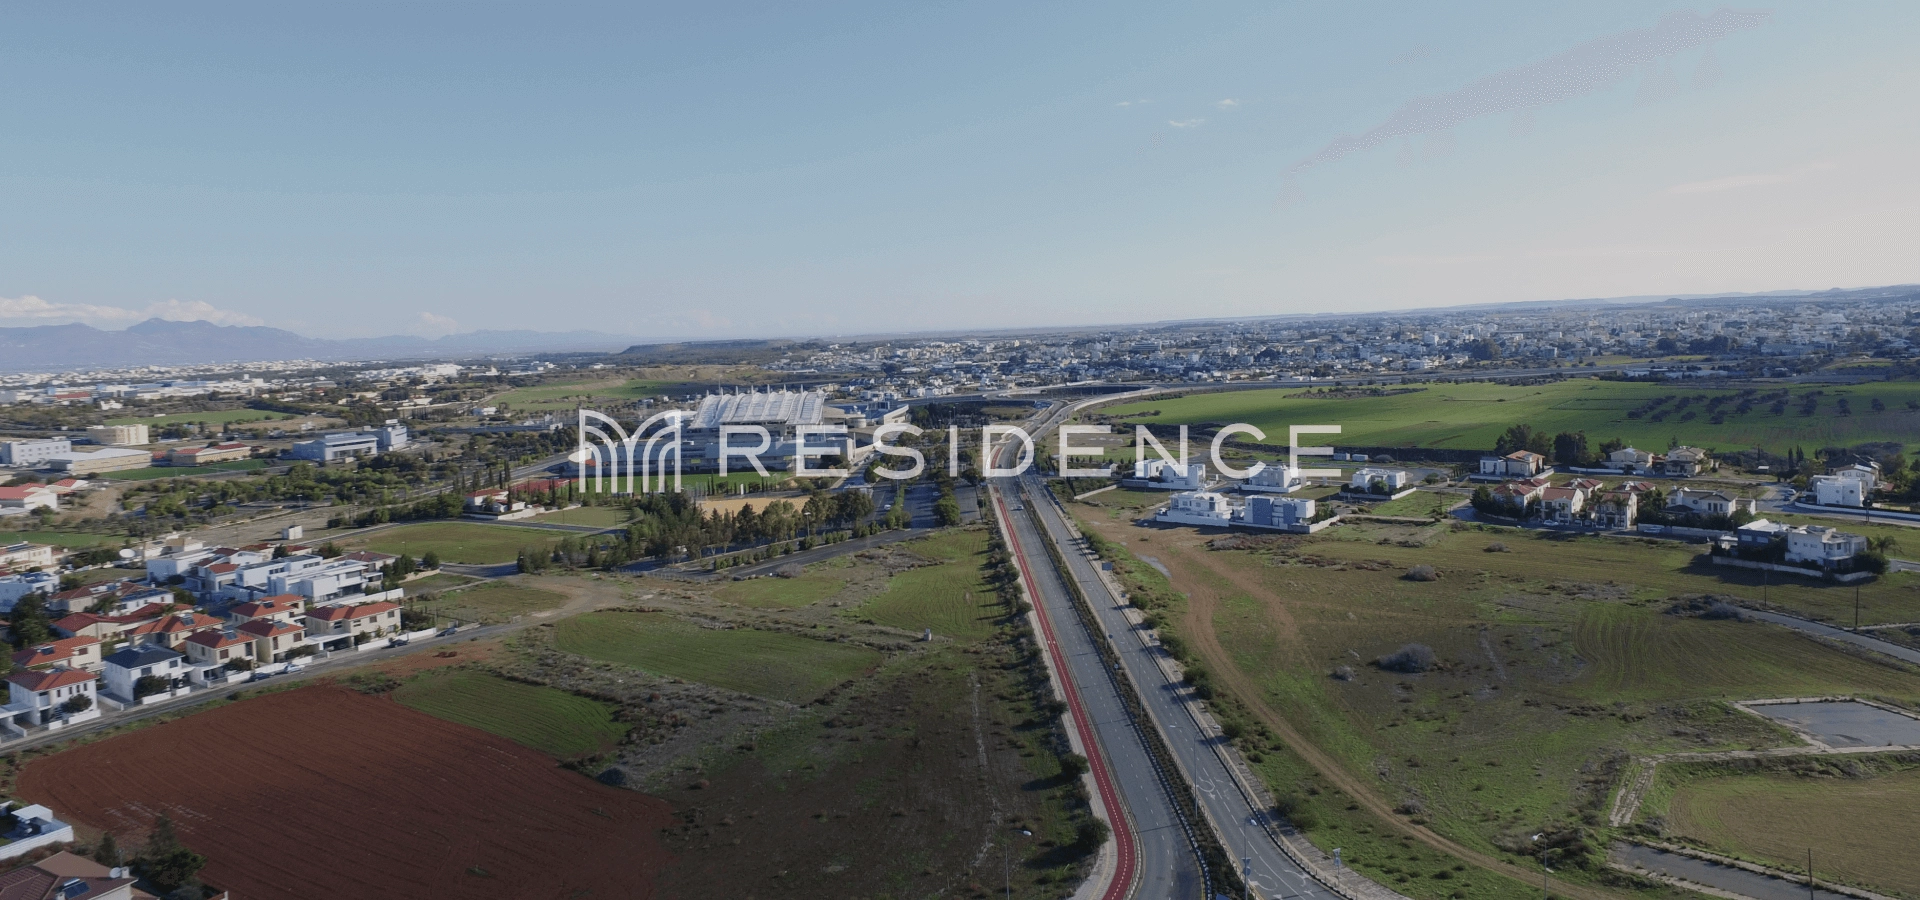 3,178m² Residential Plot for Sale in Aglantzia, Nicosia District